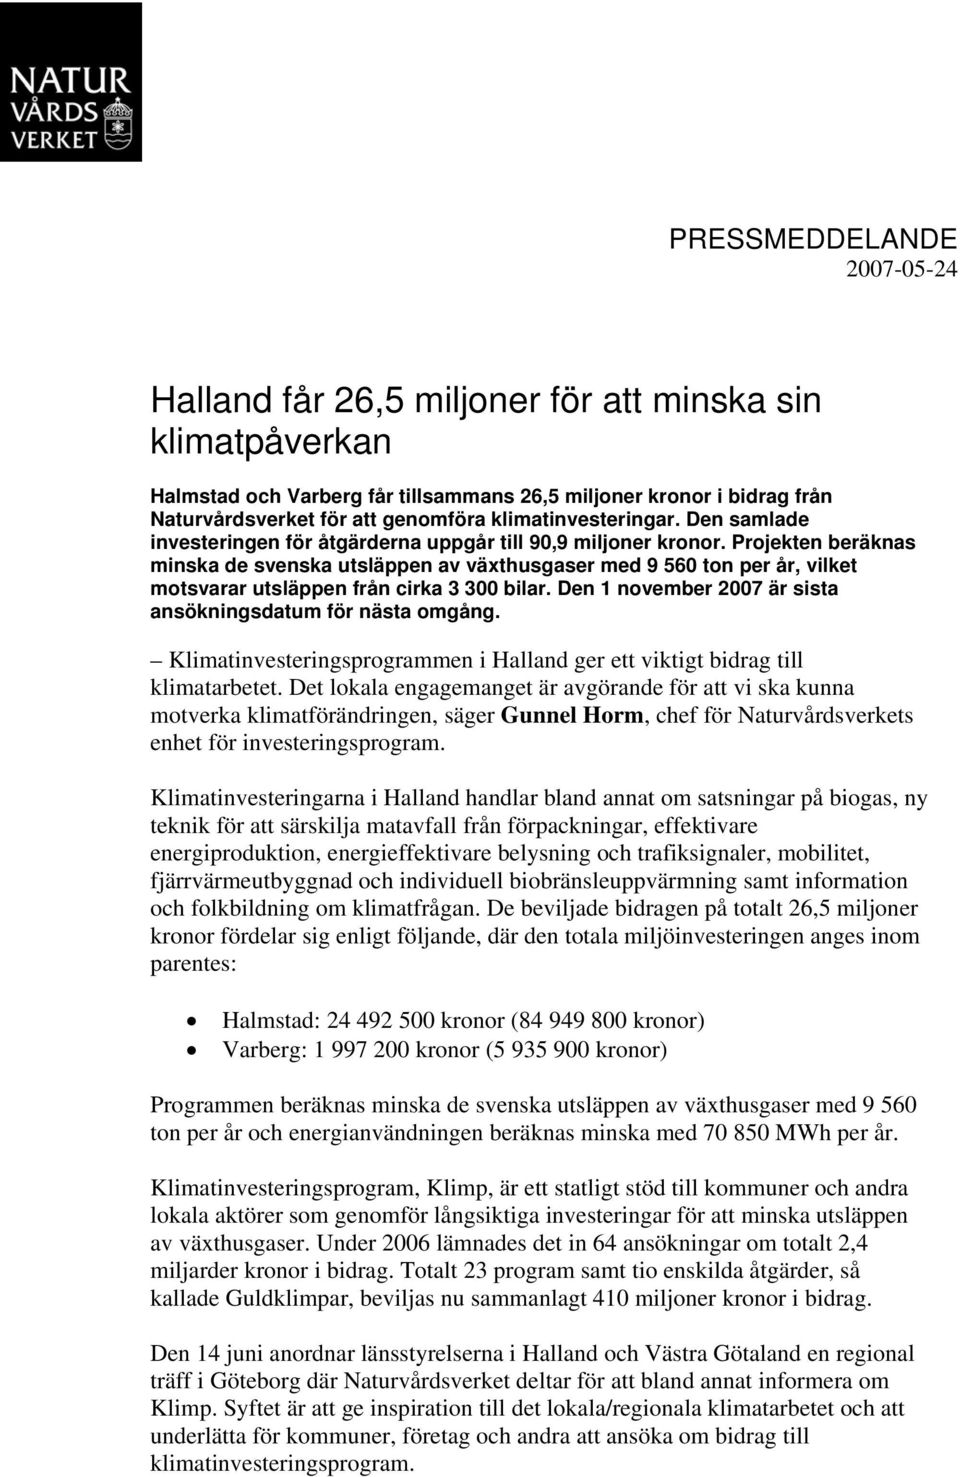 Projekten beräknas minska de svenska utsläppen av växthusgaser med 9 560 ton per år, vilket motsvarar utsläppen från cirka 3 300 bilar. Den 1 november 2007 är sista ansökningsdatum för nästa omgång.